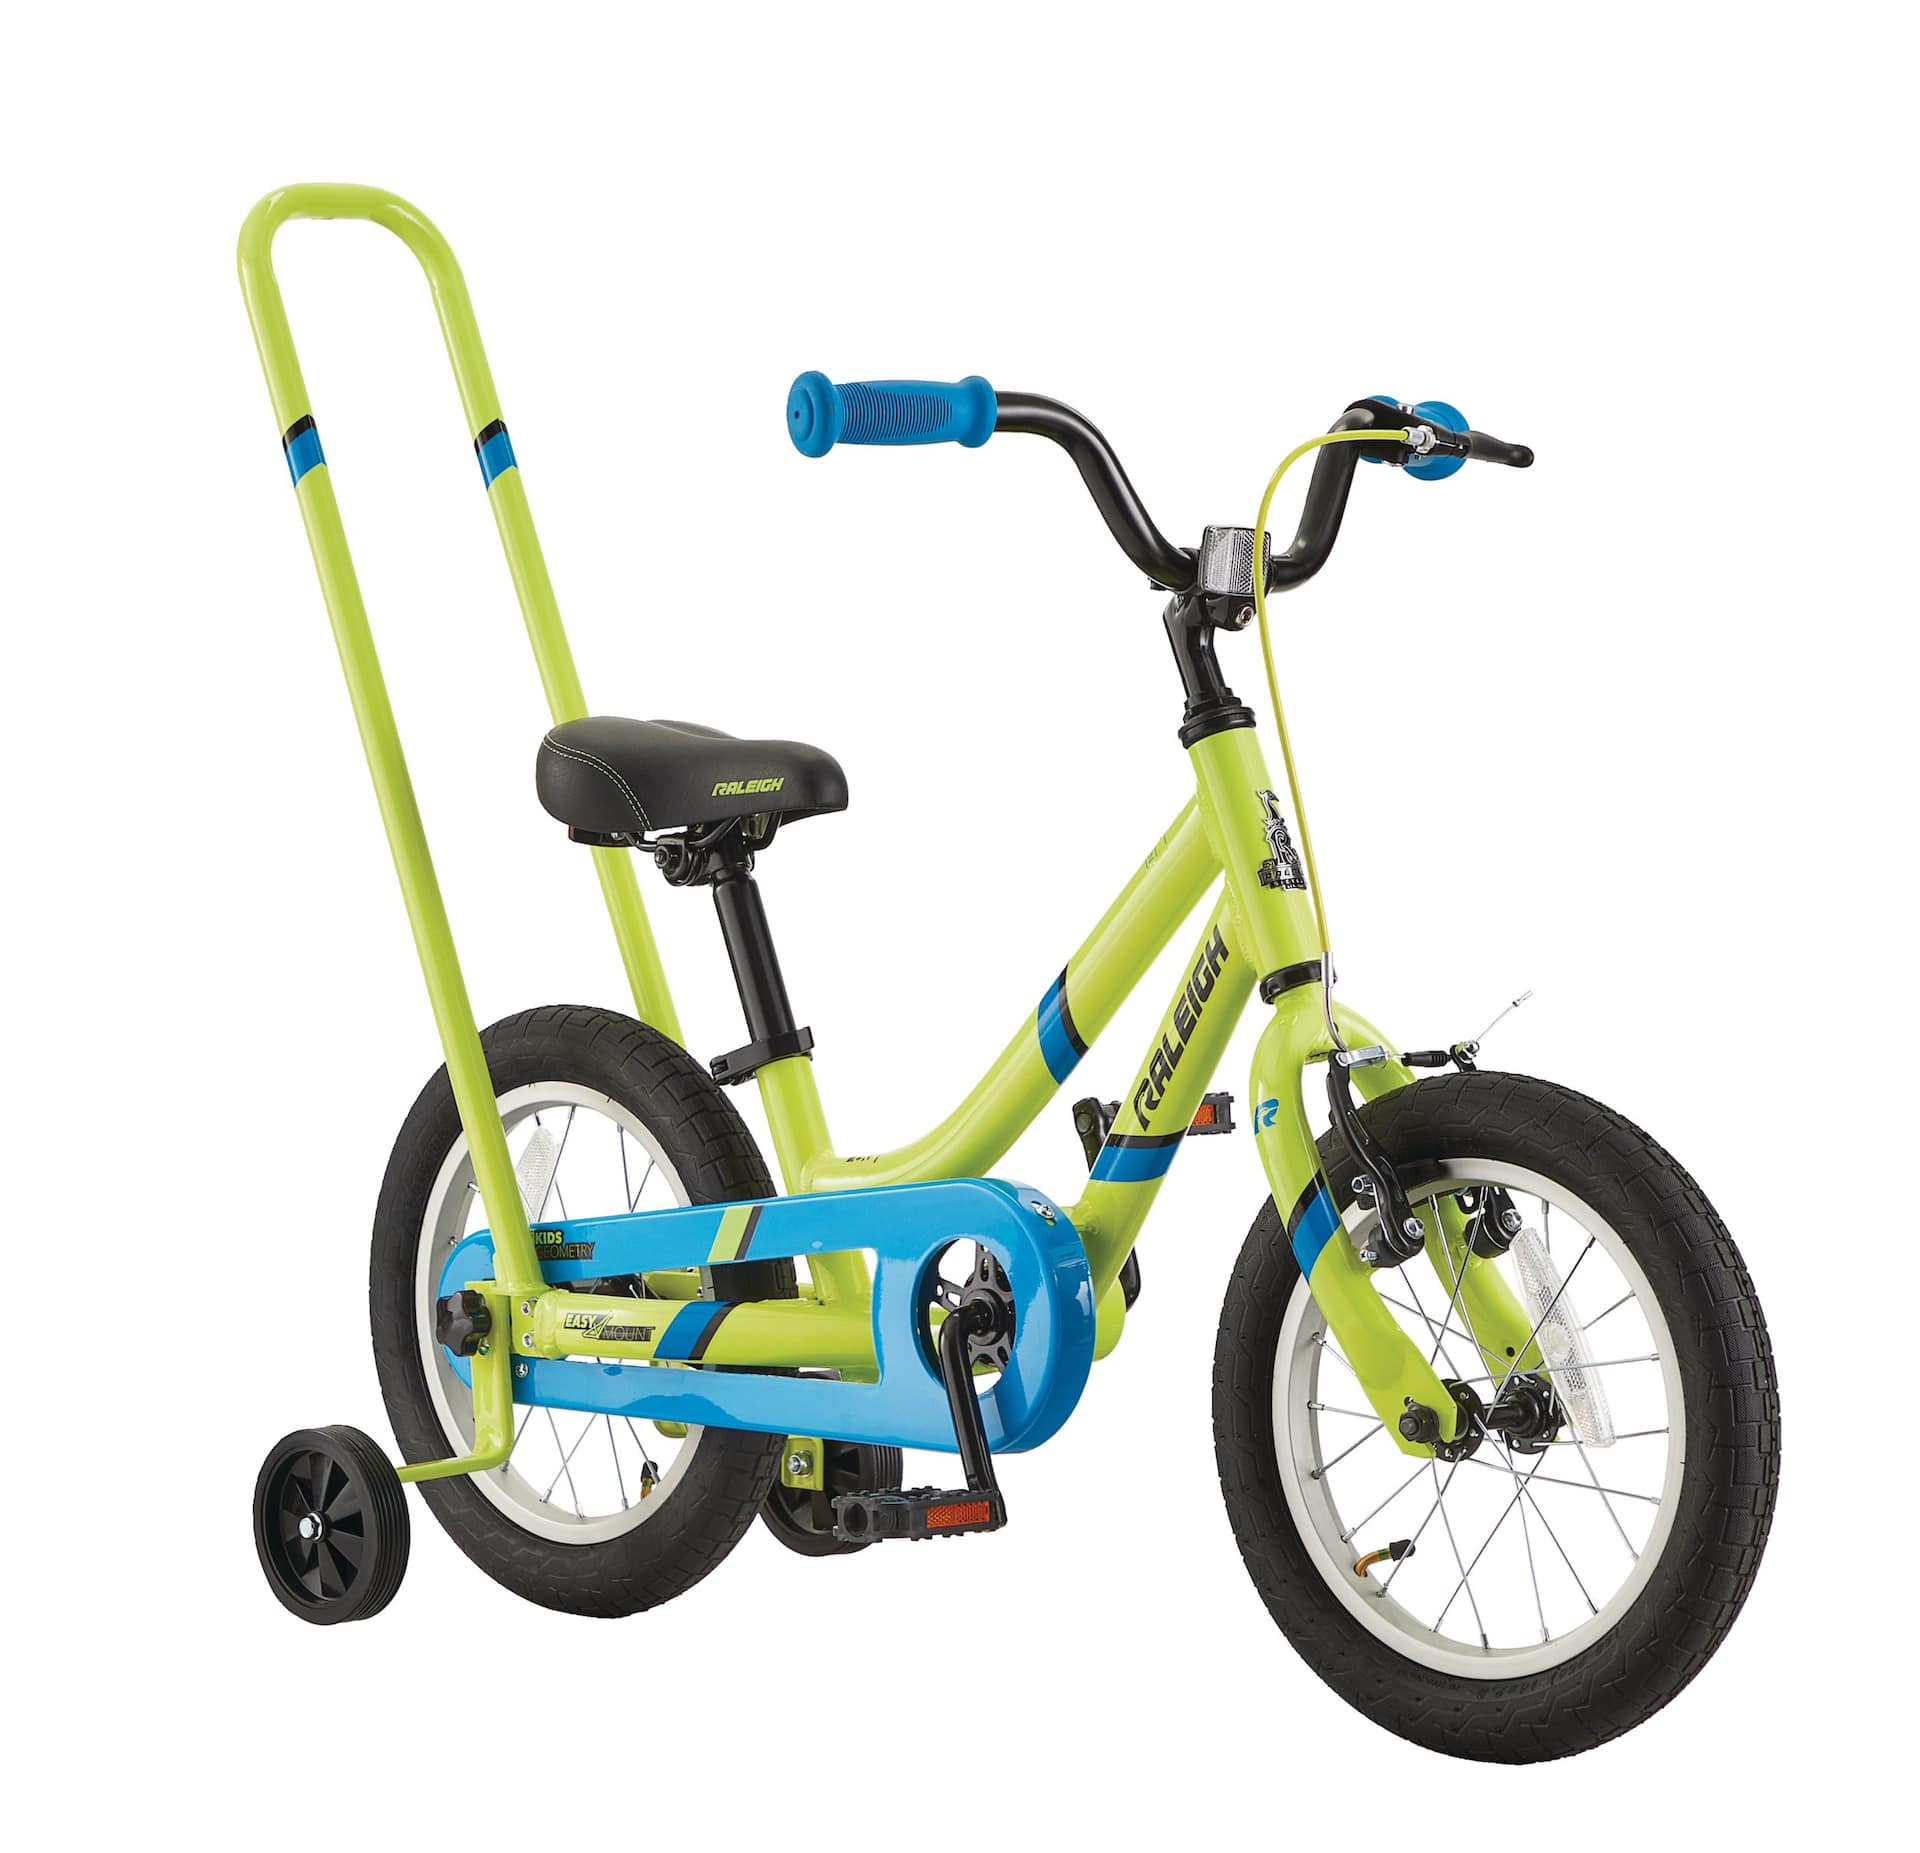 Petites roues stabilisatrices lumineuses vélo enfant